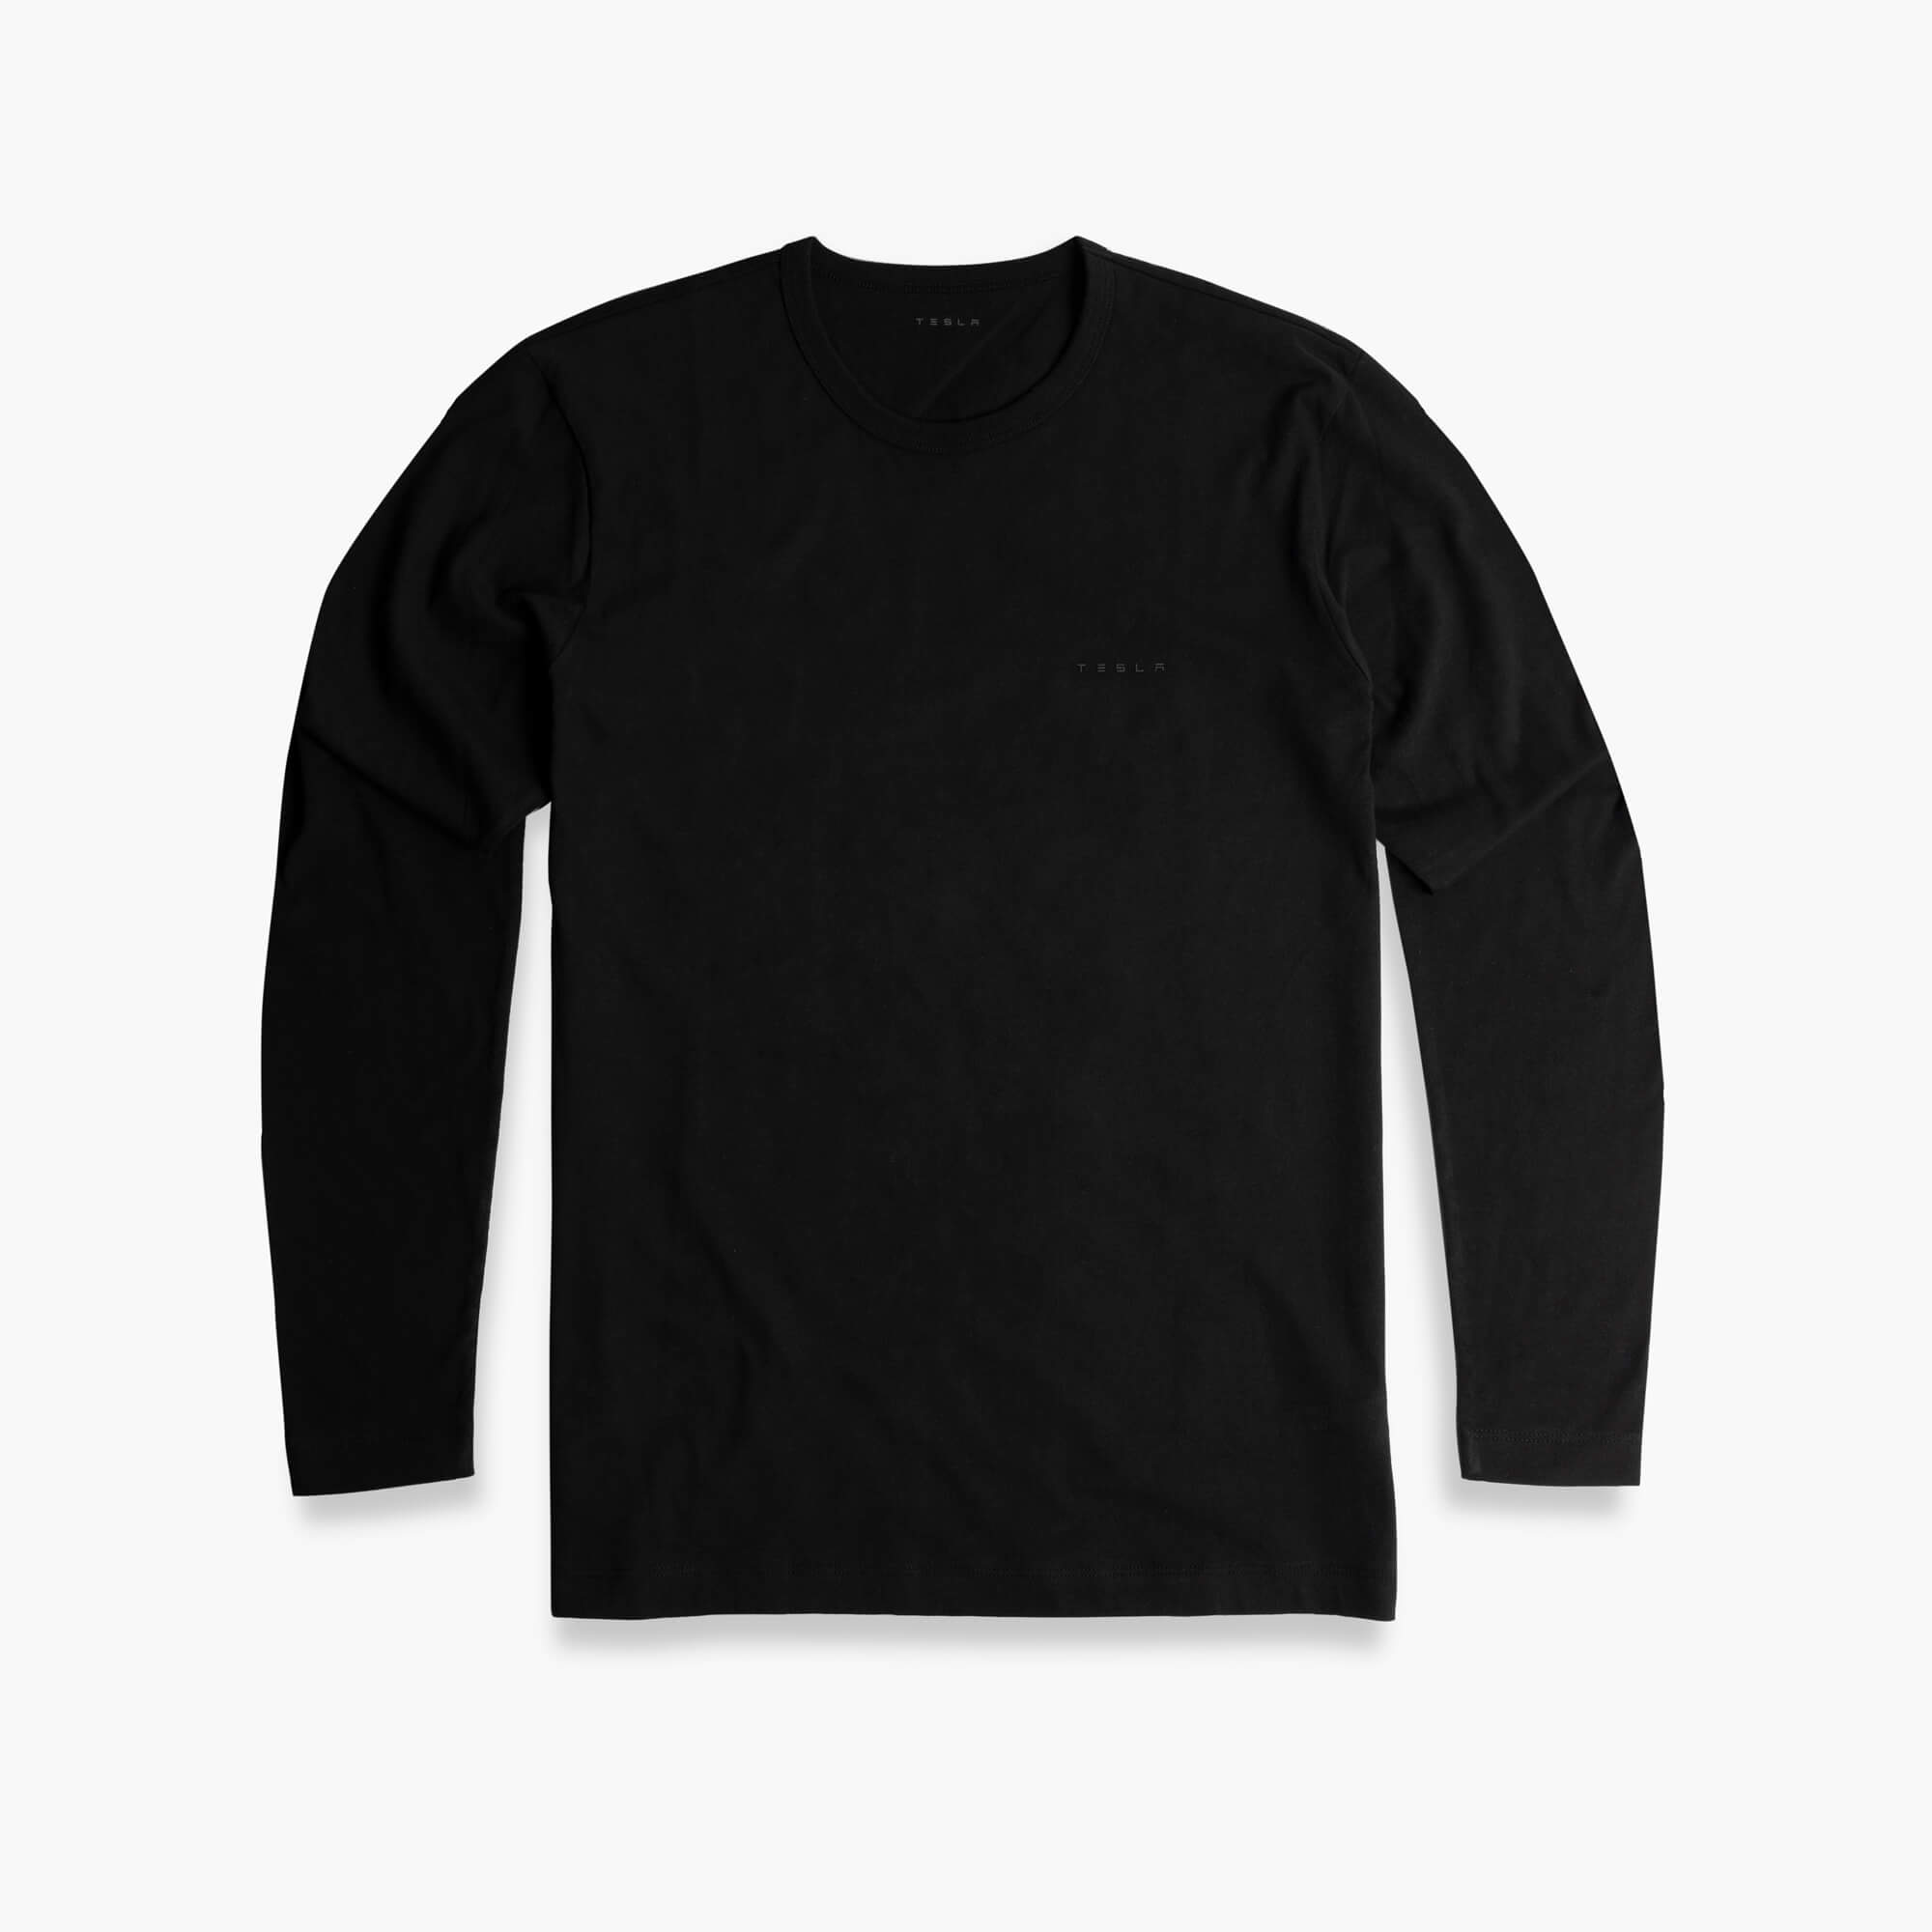 Miesten pitkähihainen T-paita – 3D-tekstilogo